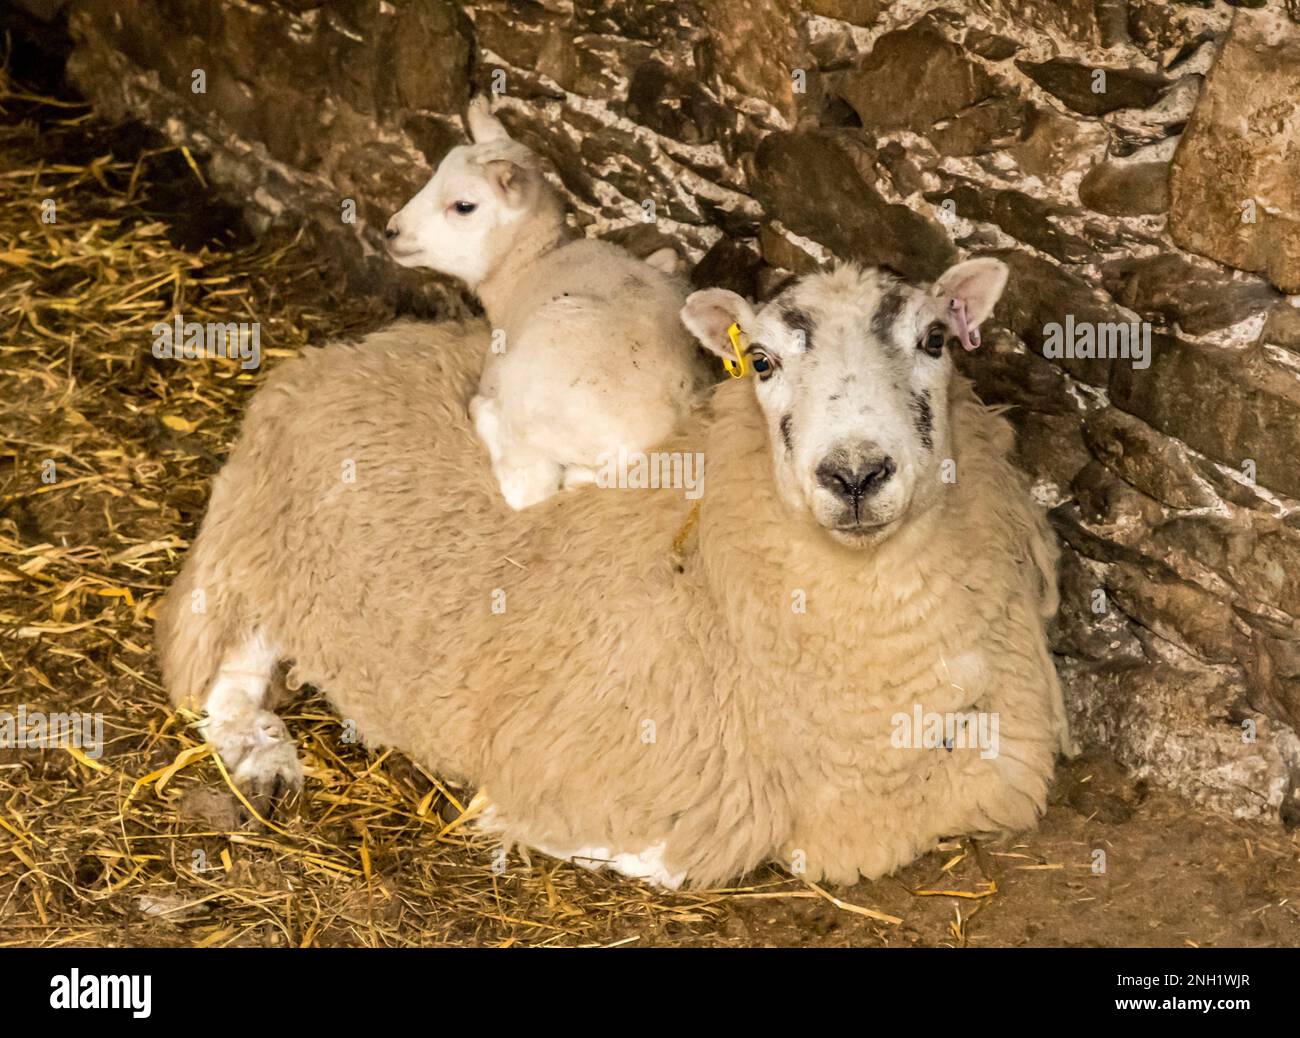 Giovane agnello seduto sulla schiena di un pecora su un pavimento coperto di paglia Foto Stock